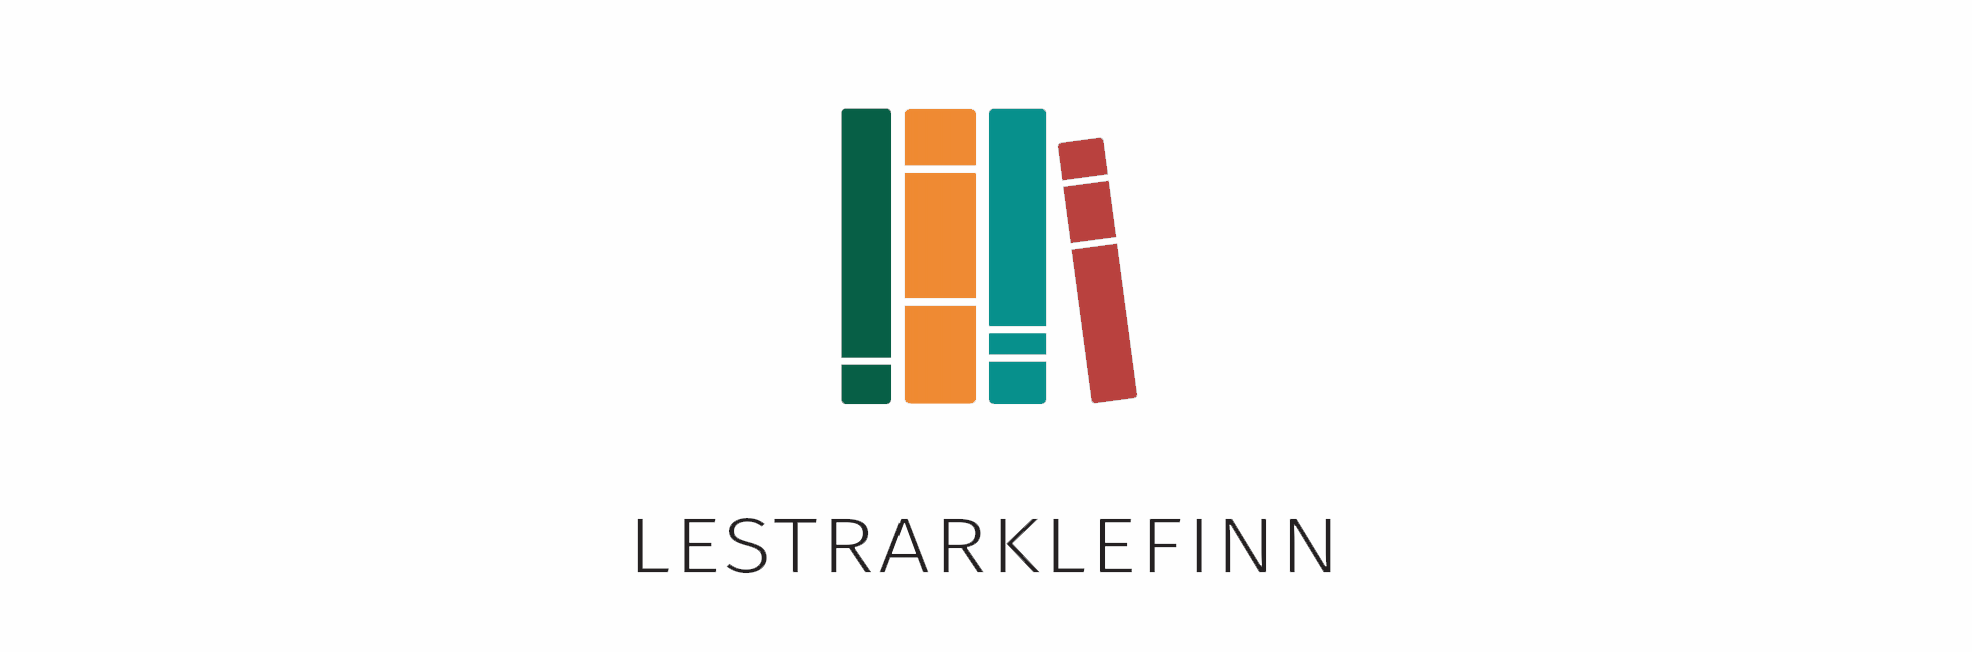 Lestrarklefinn logo